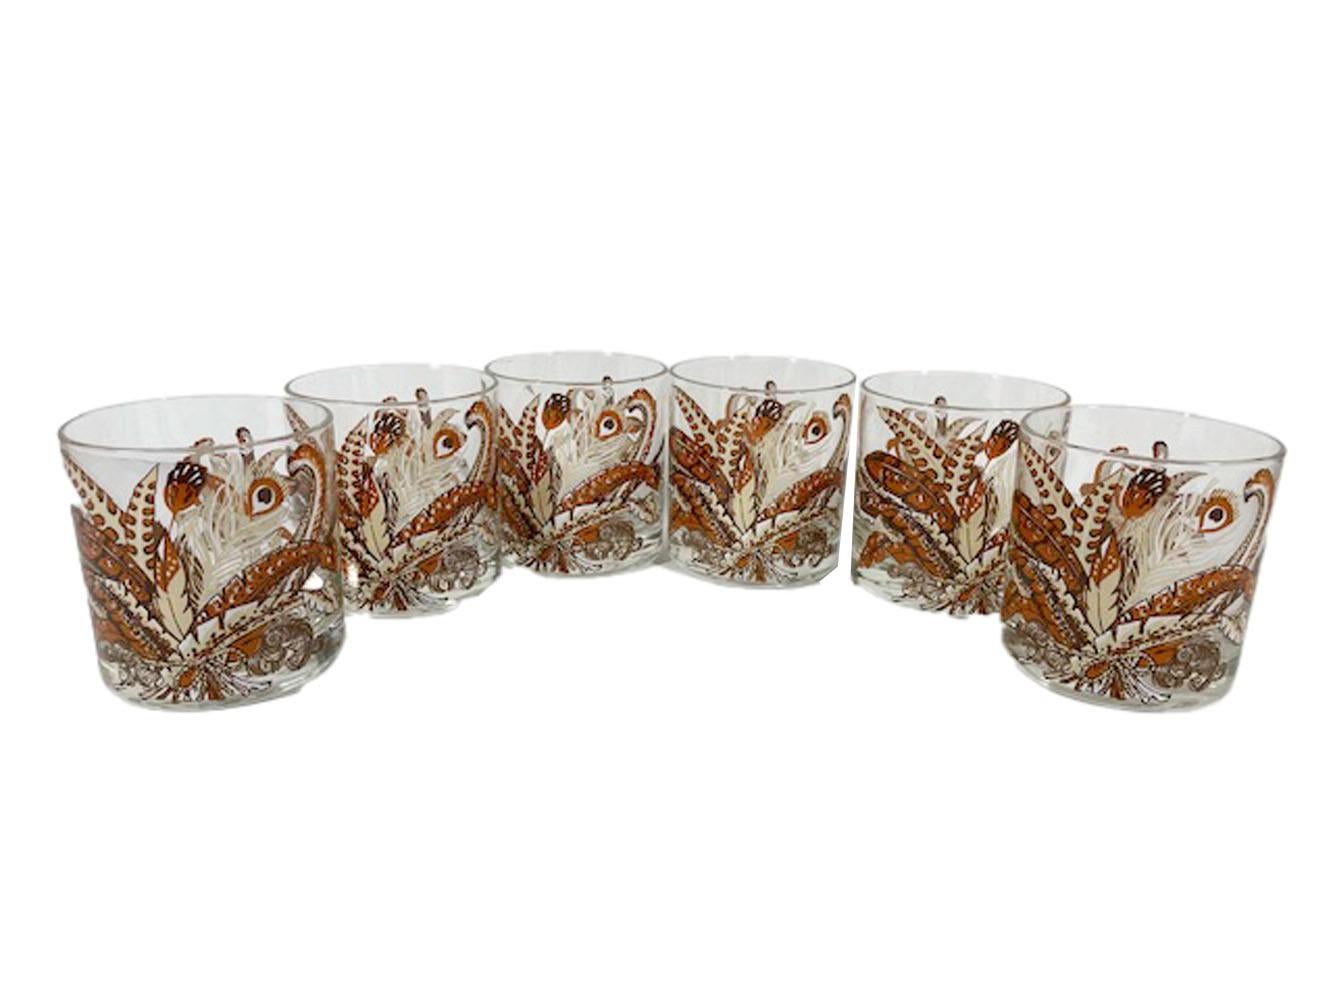 Verres à glace de style moderne du milieu du siècle, conçus par Georges Briard, présentant un arrangement de plumes exotiques en émail blanc, crème, beige et brun.